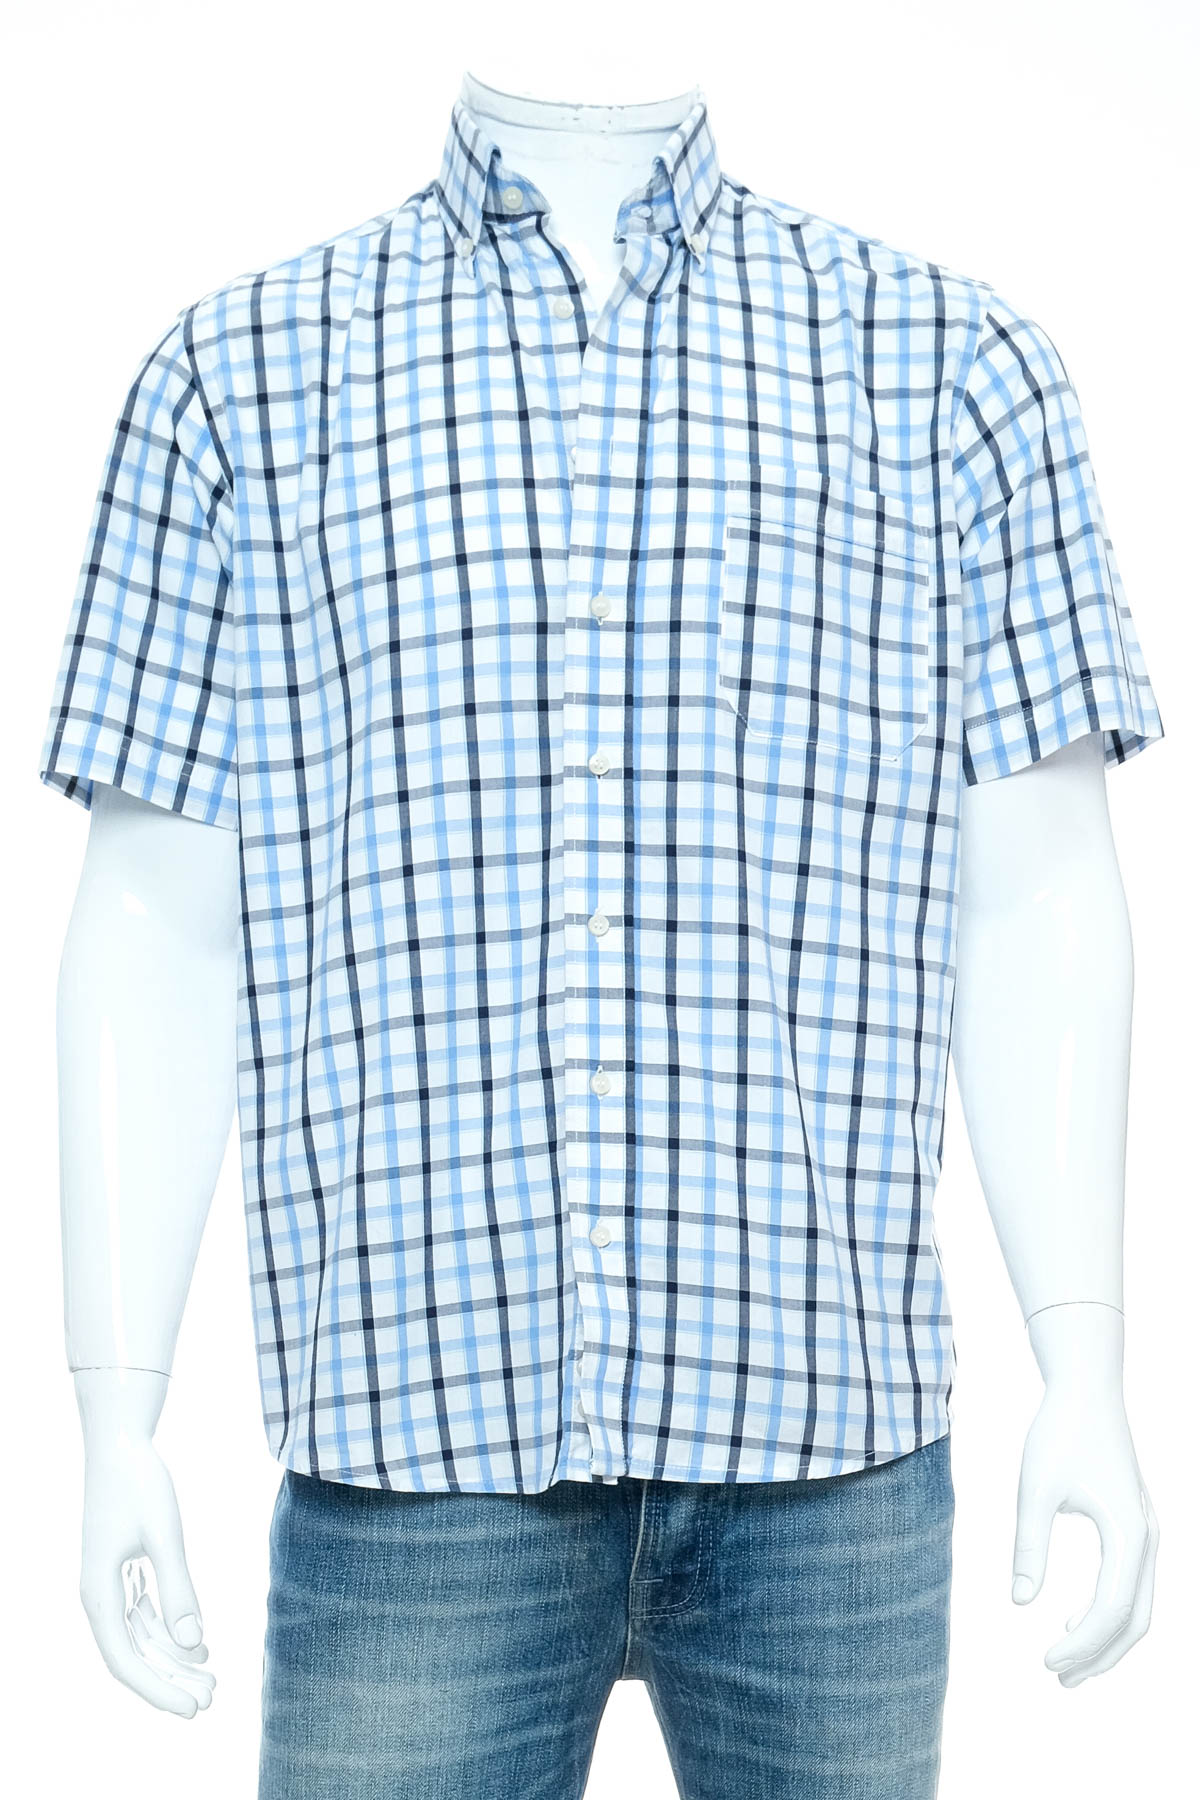 Men's shirt - C.Comberti - 0